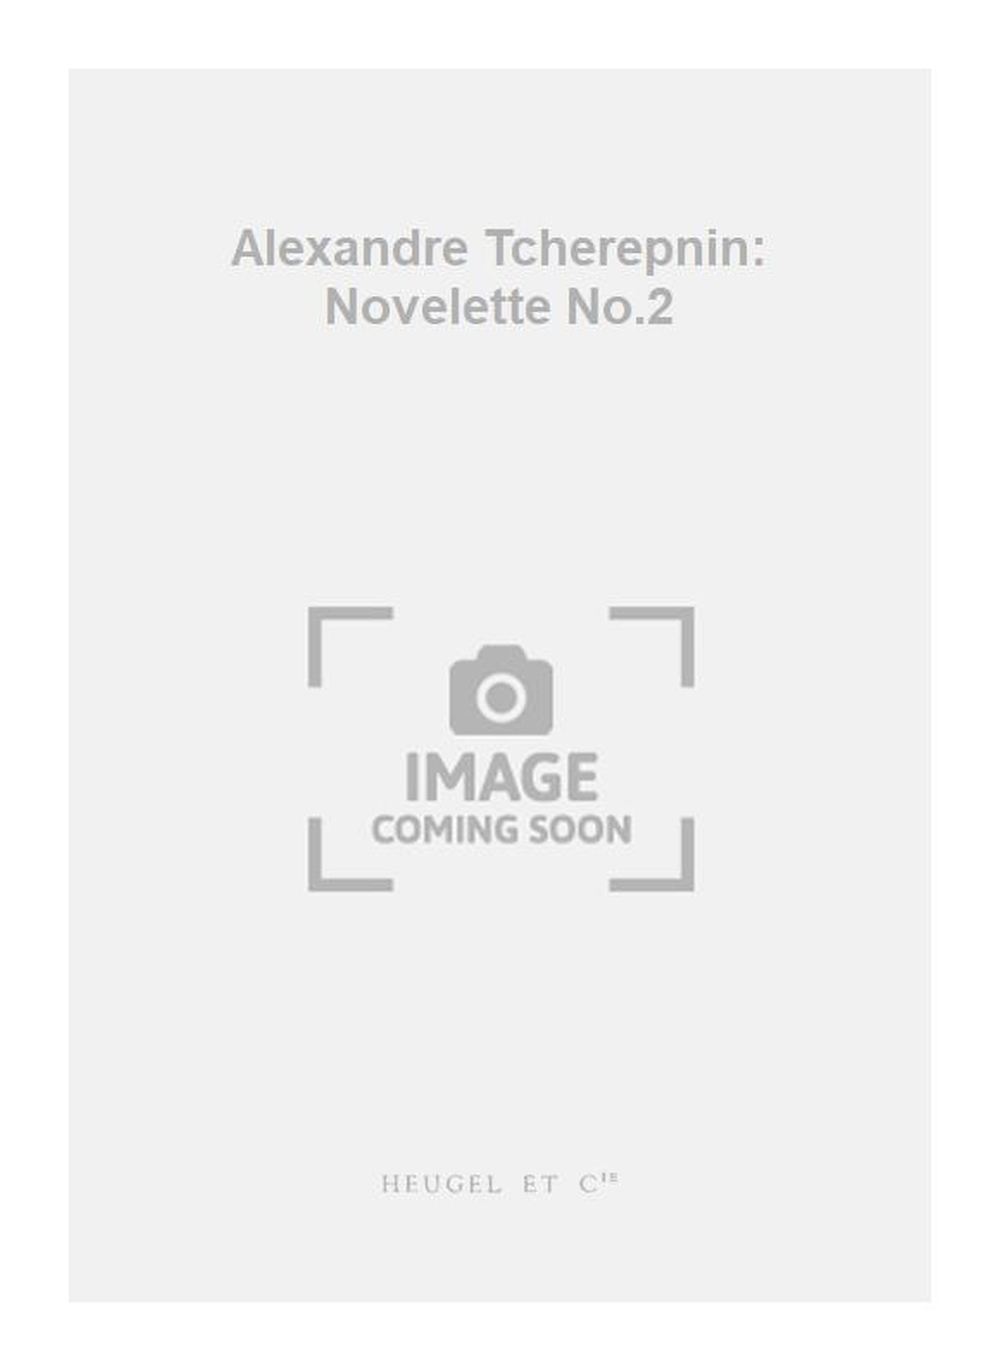 Alexander Tcherepnin: Alexandre Tcherepnin: Novelette No.2